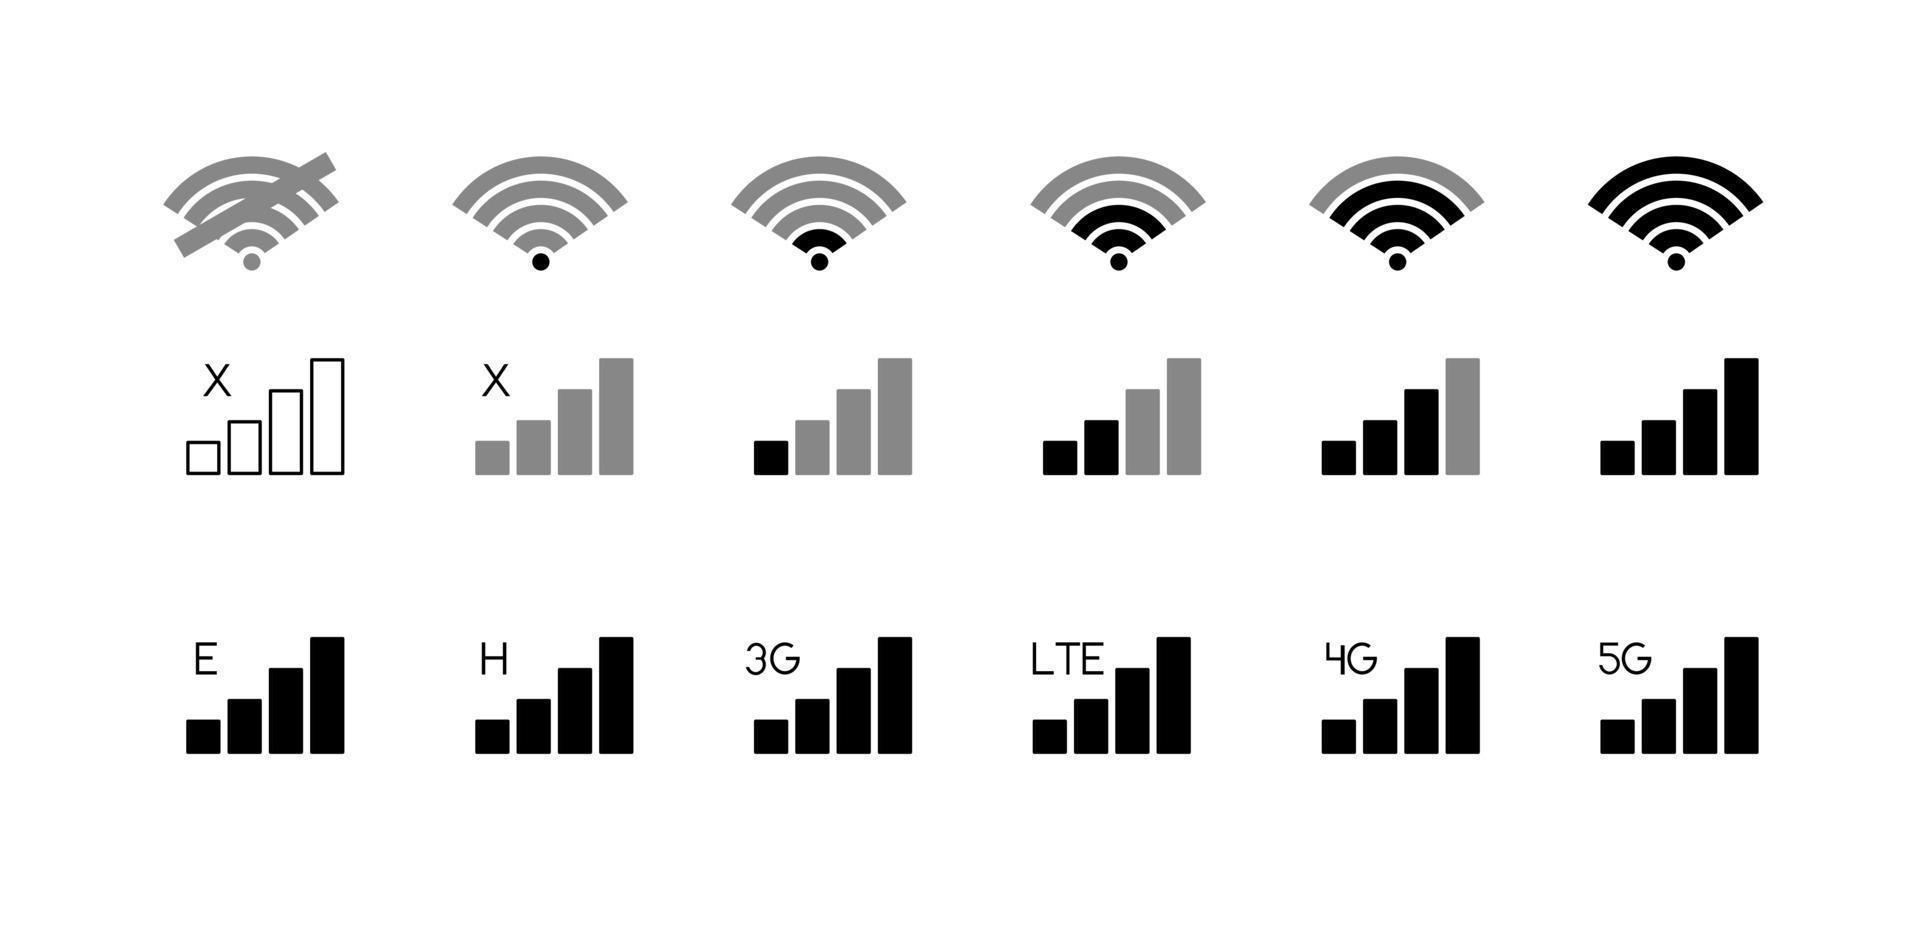 iconos de nivel de conexión de teléfono móvil. sin señal, mal, lte, 3g, 4g y 5g conjunto de iconos de estado de red aislado en fondo blanco vector